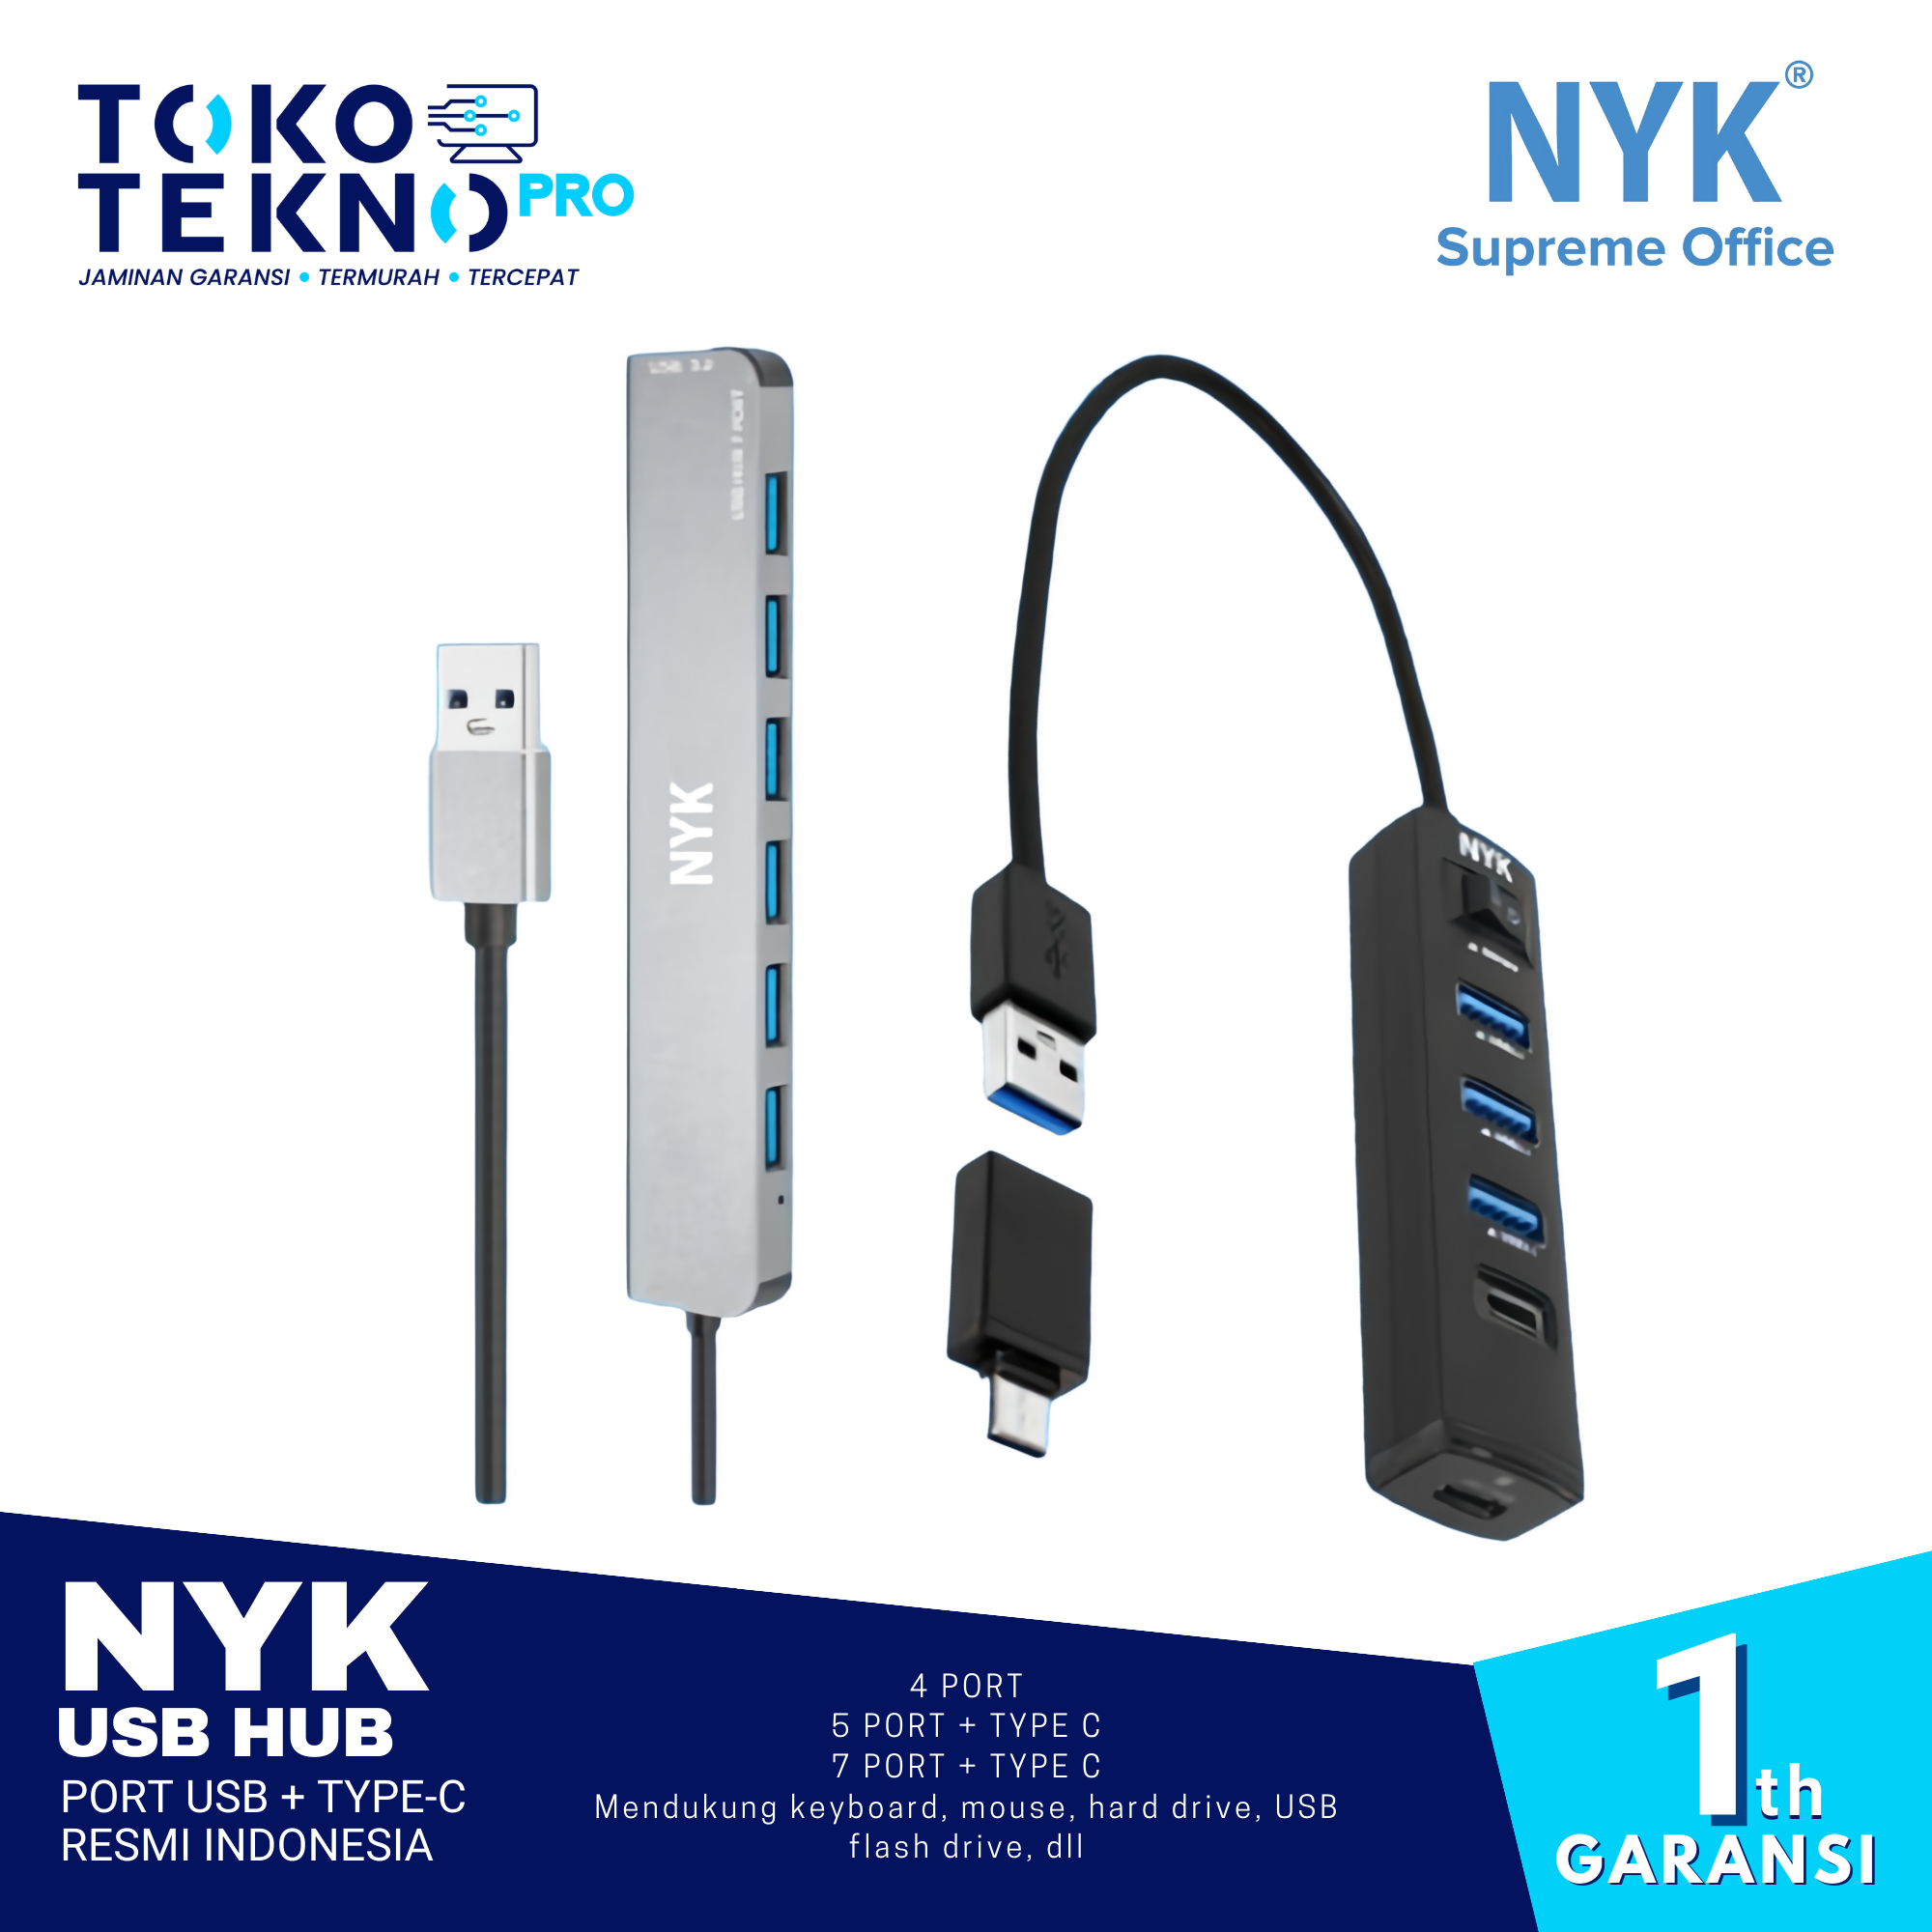 USB HUB Port USB + TYPE-C